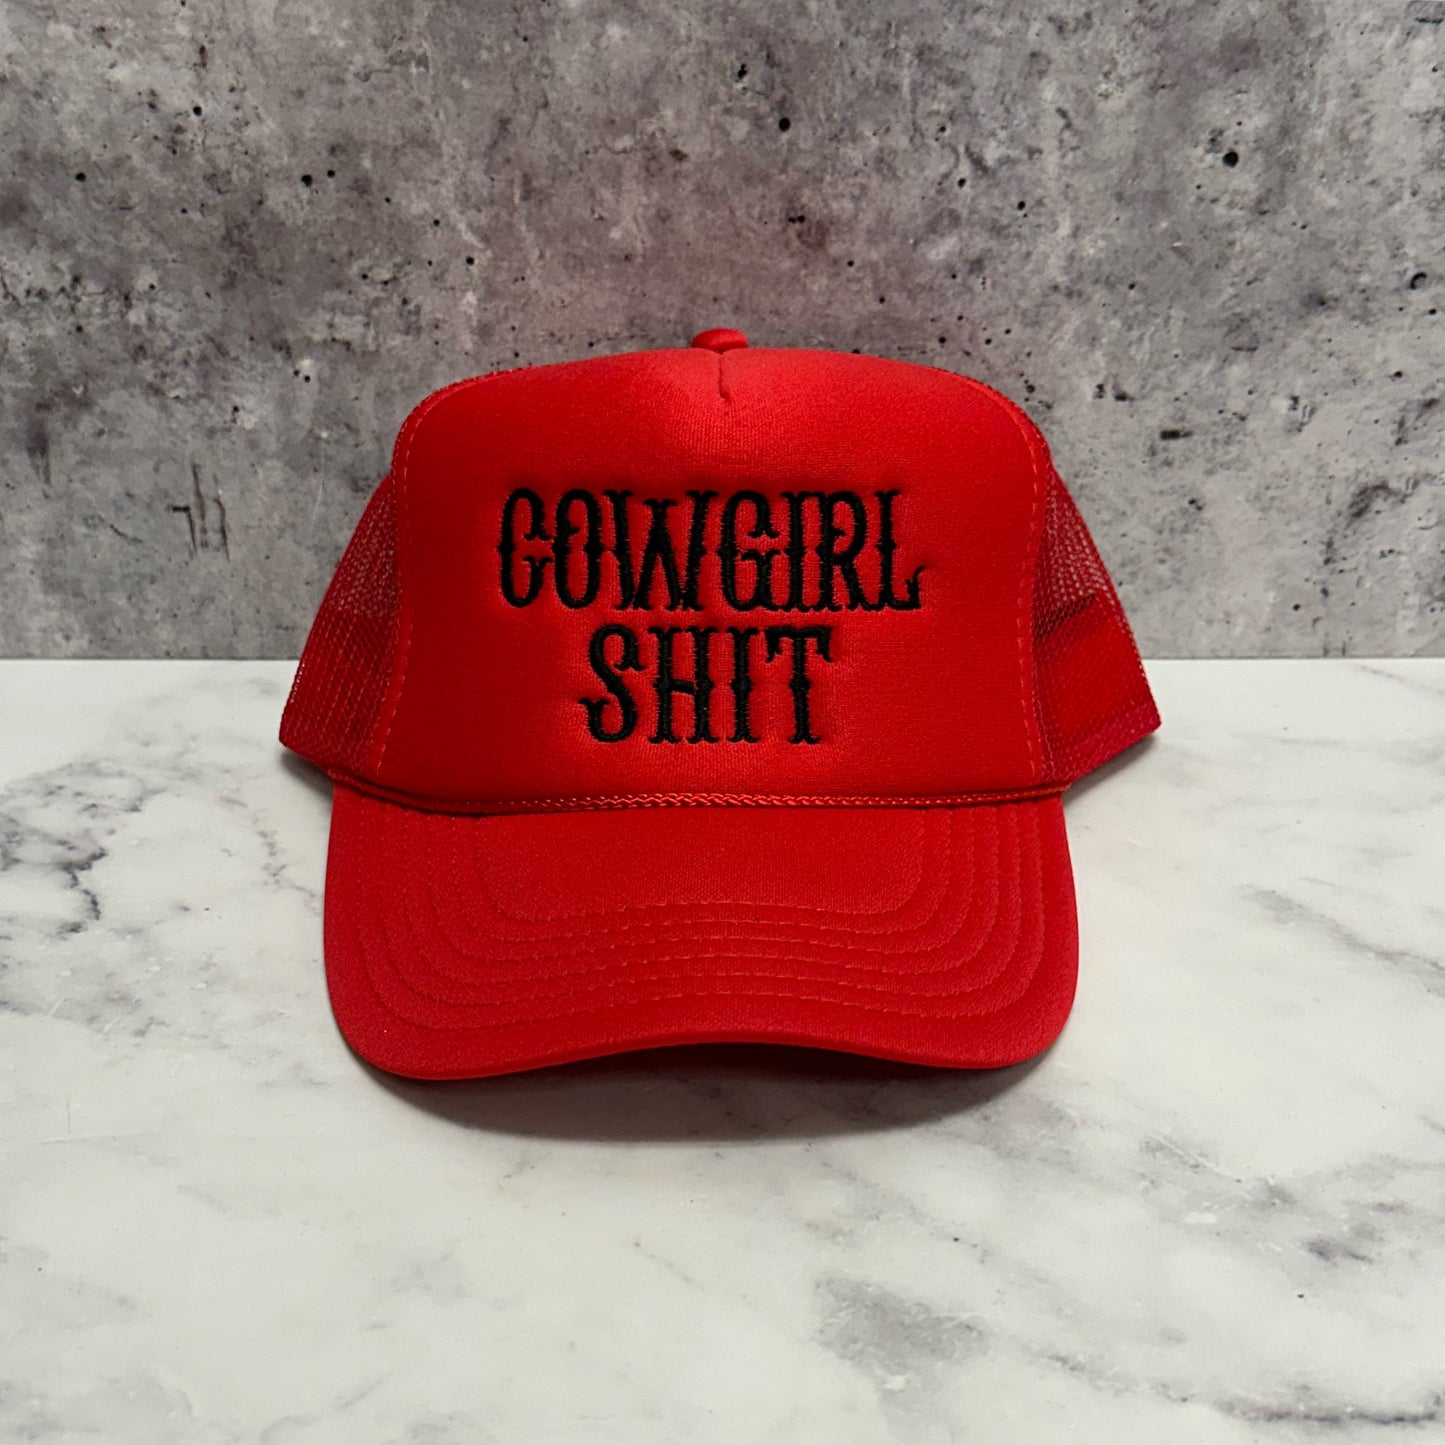 Cowgirl Sh!t Trucker Hat